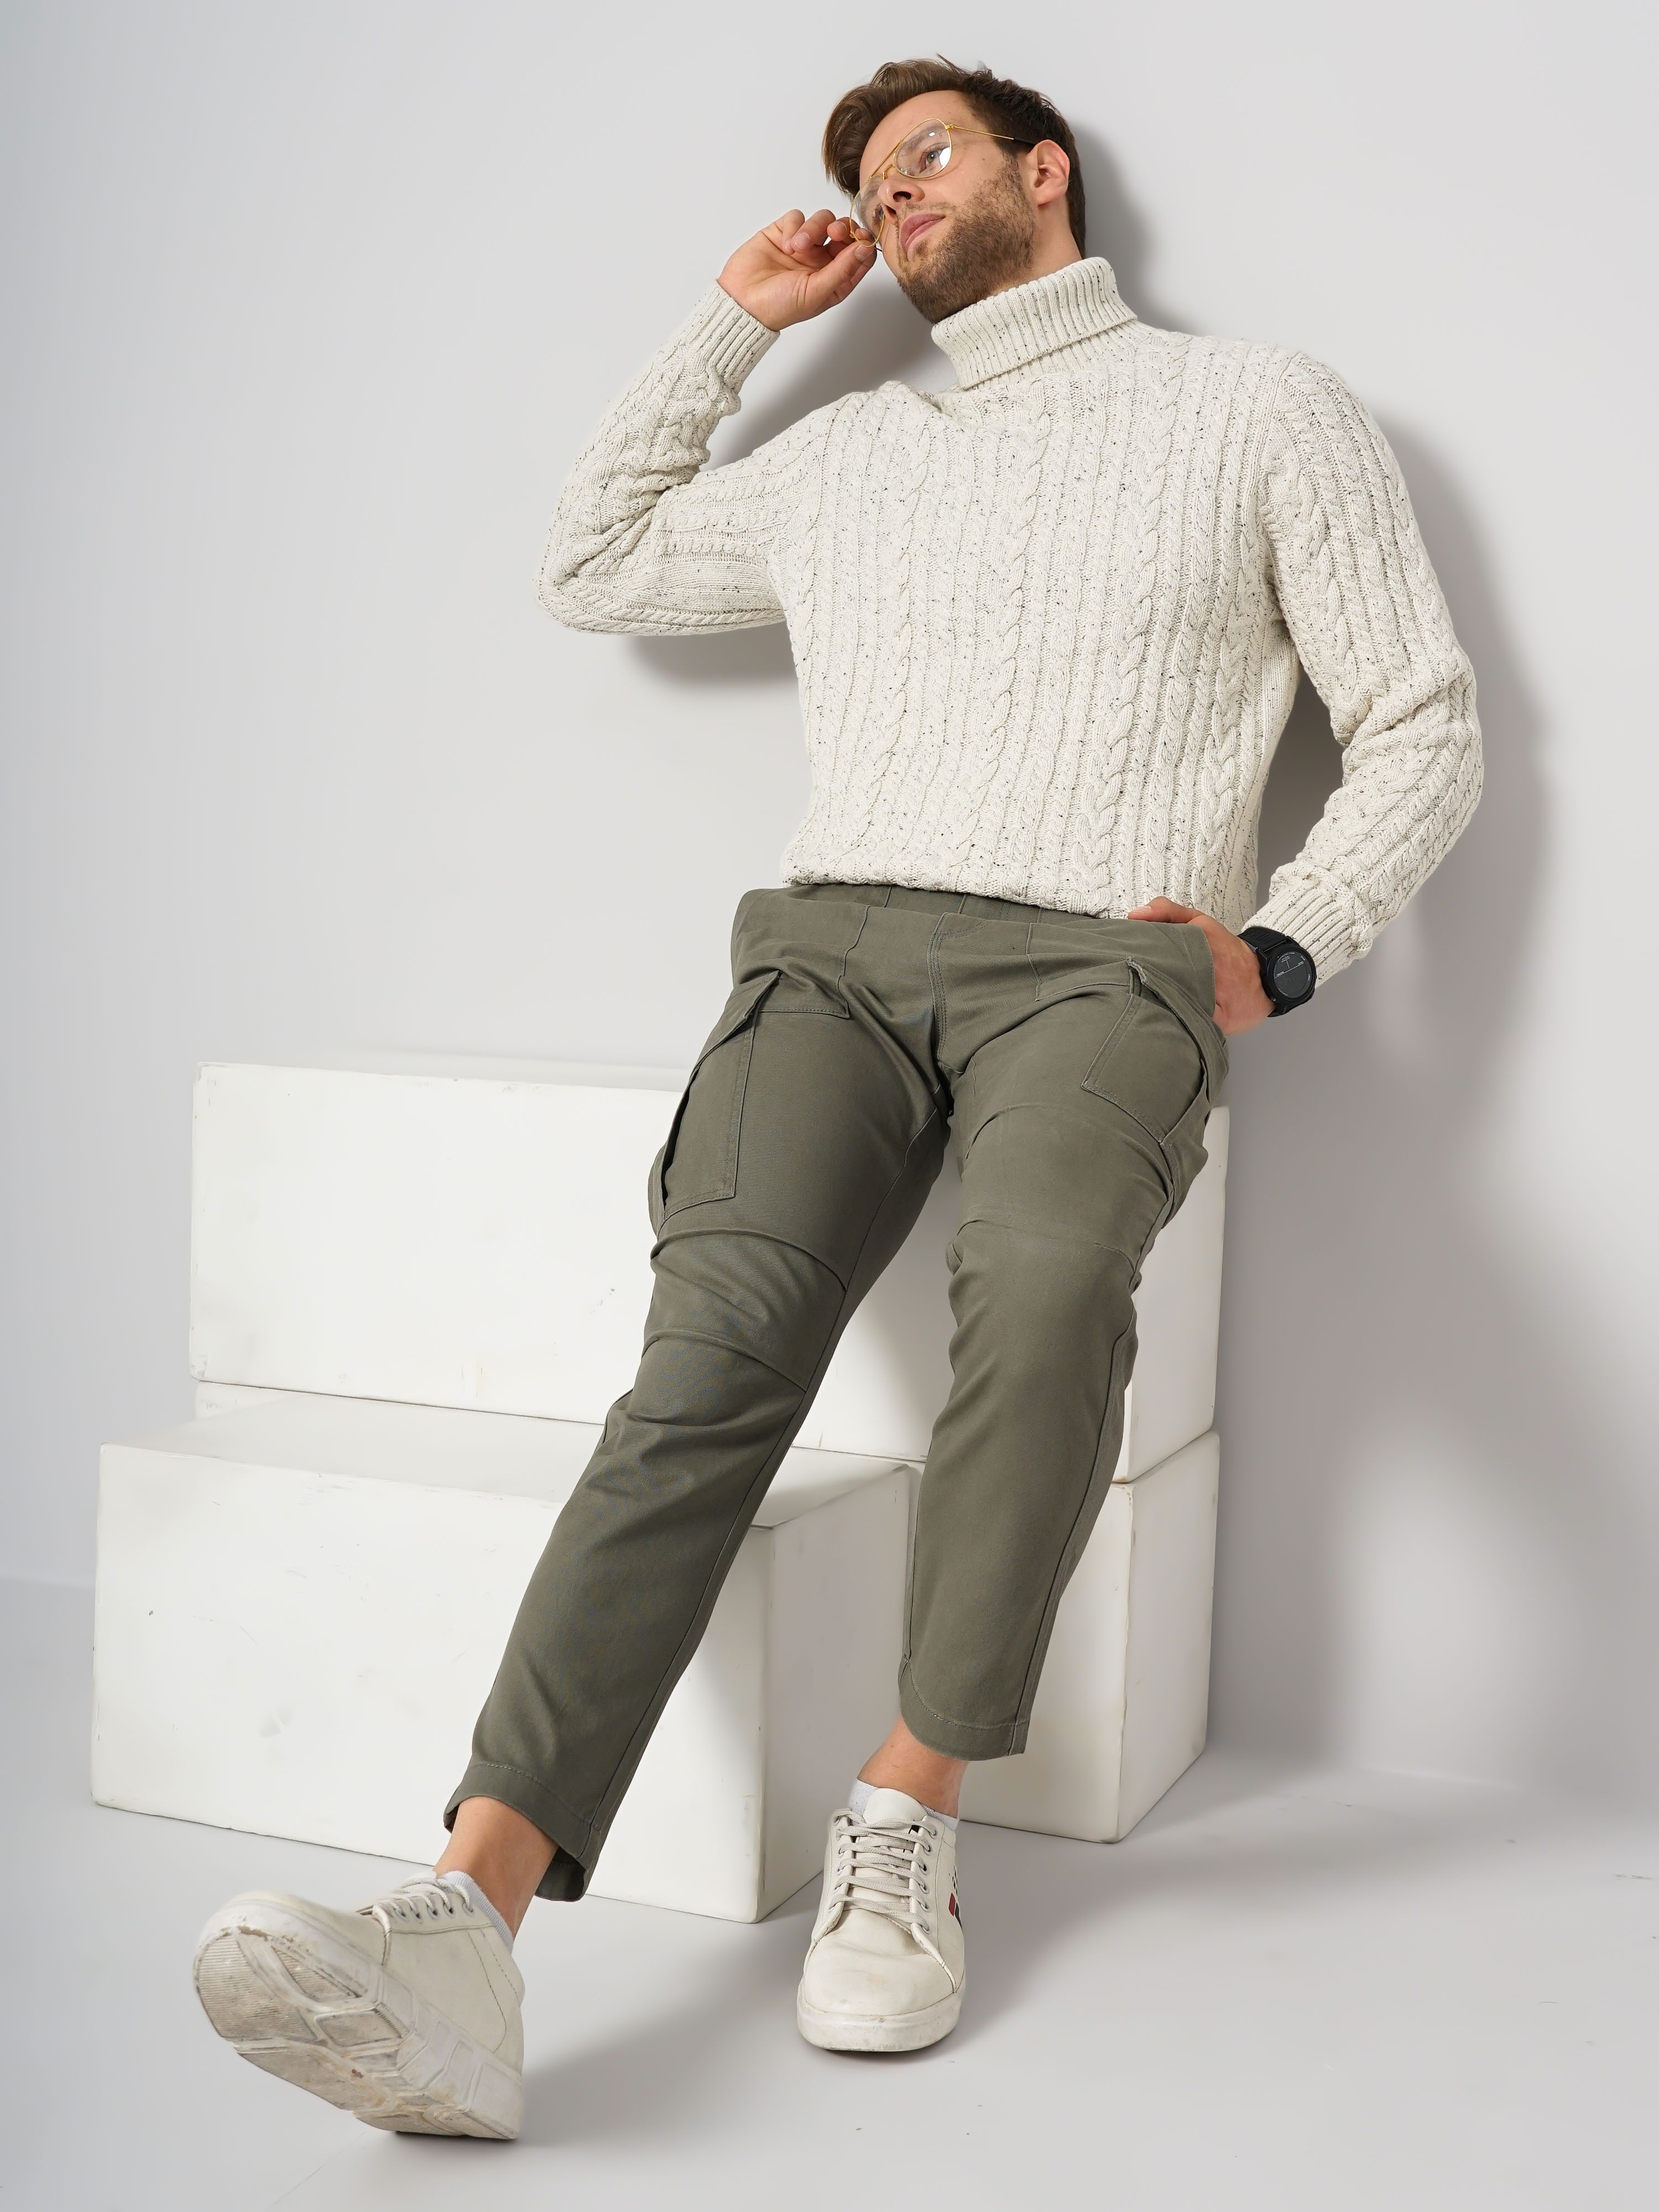 Men's Beige Knitted Sweaters